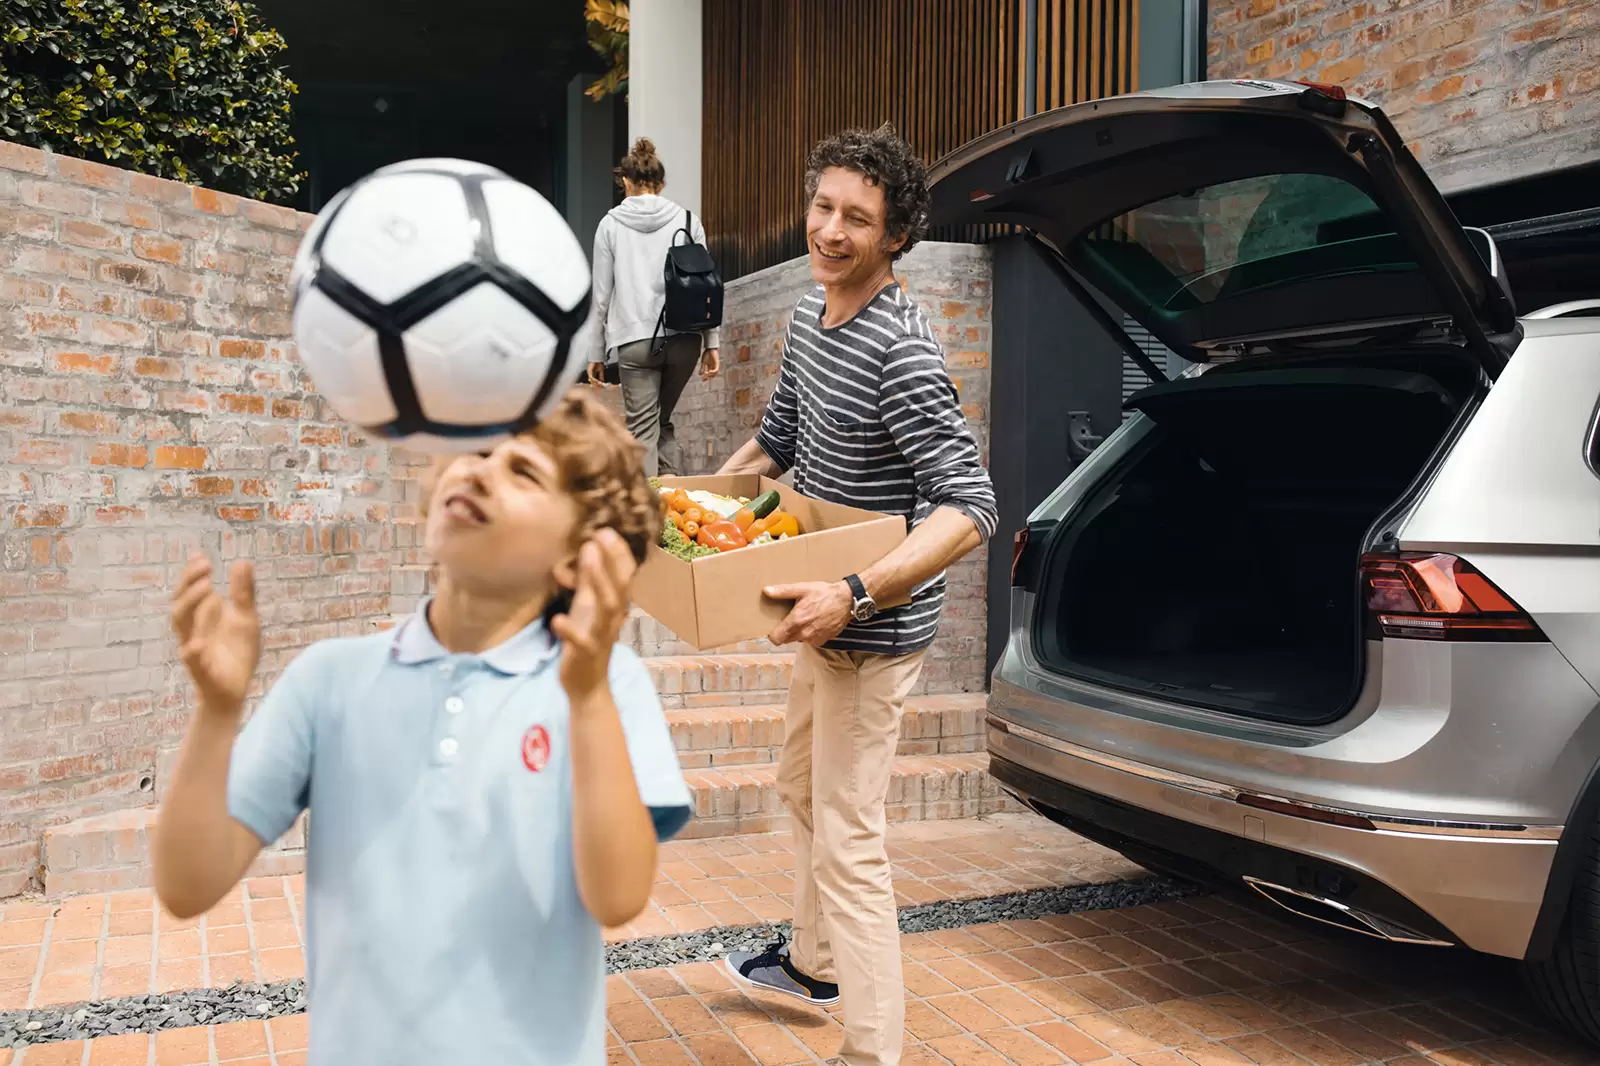 Niño jungando con una pelota mientras lo mira su padre que baja una caja de un coche